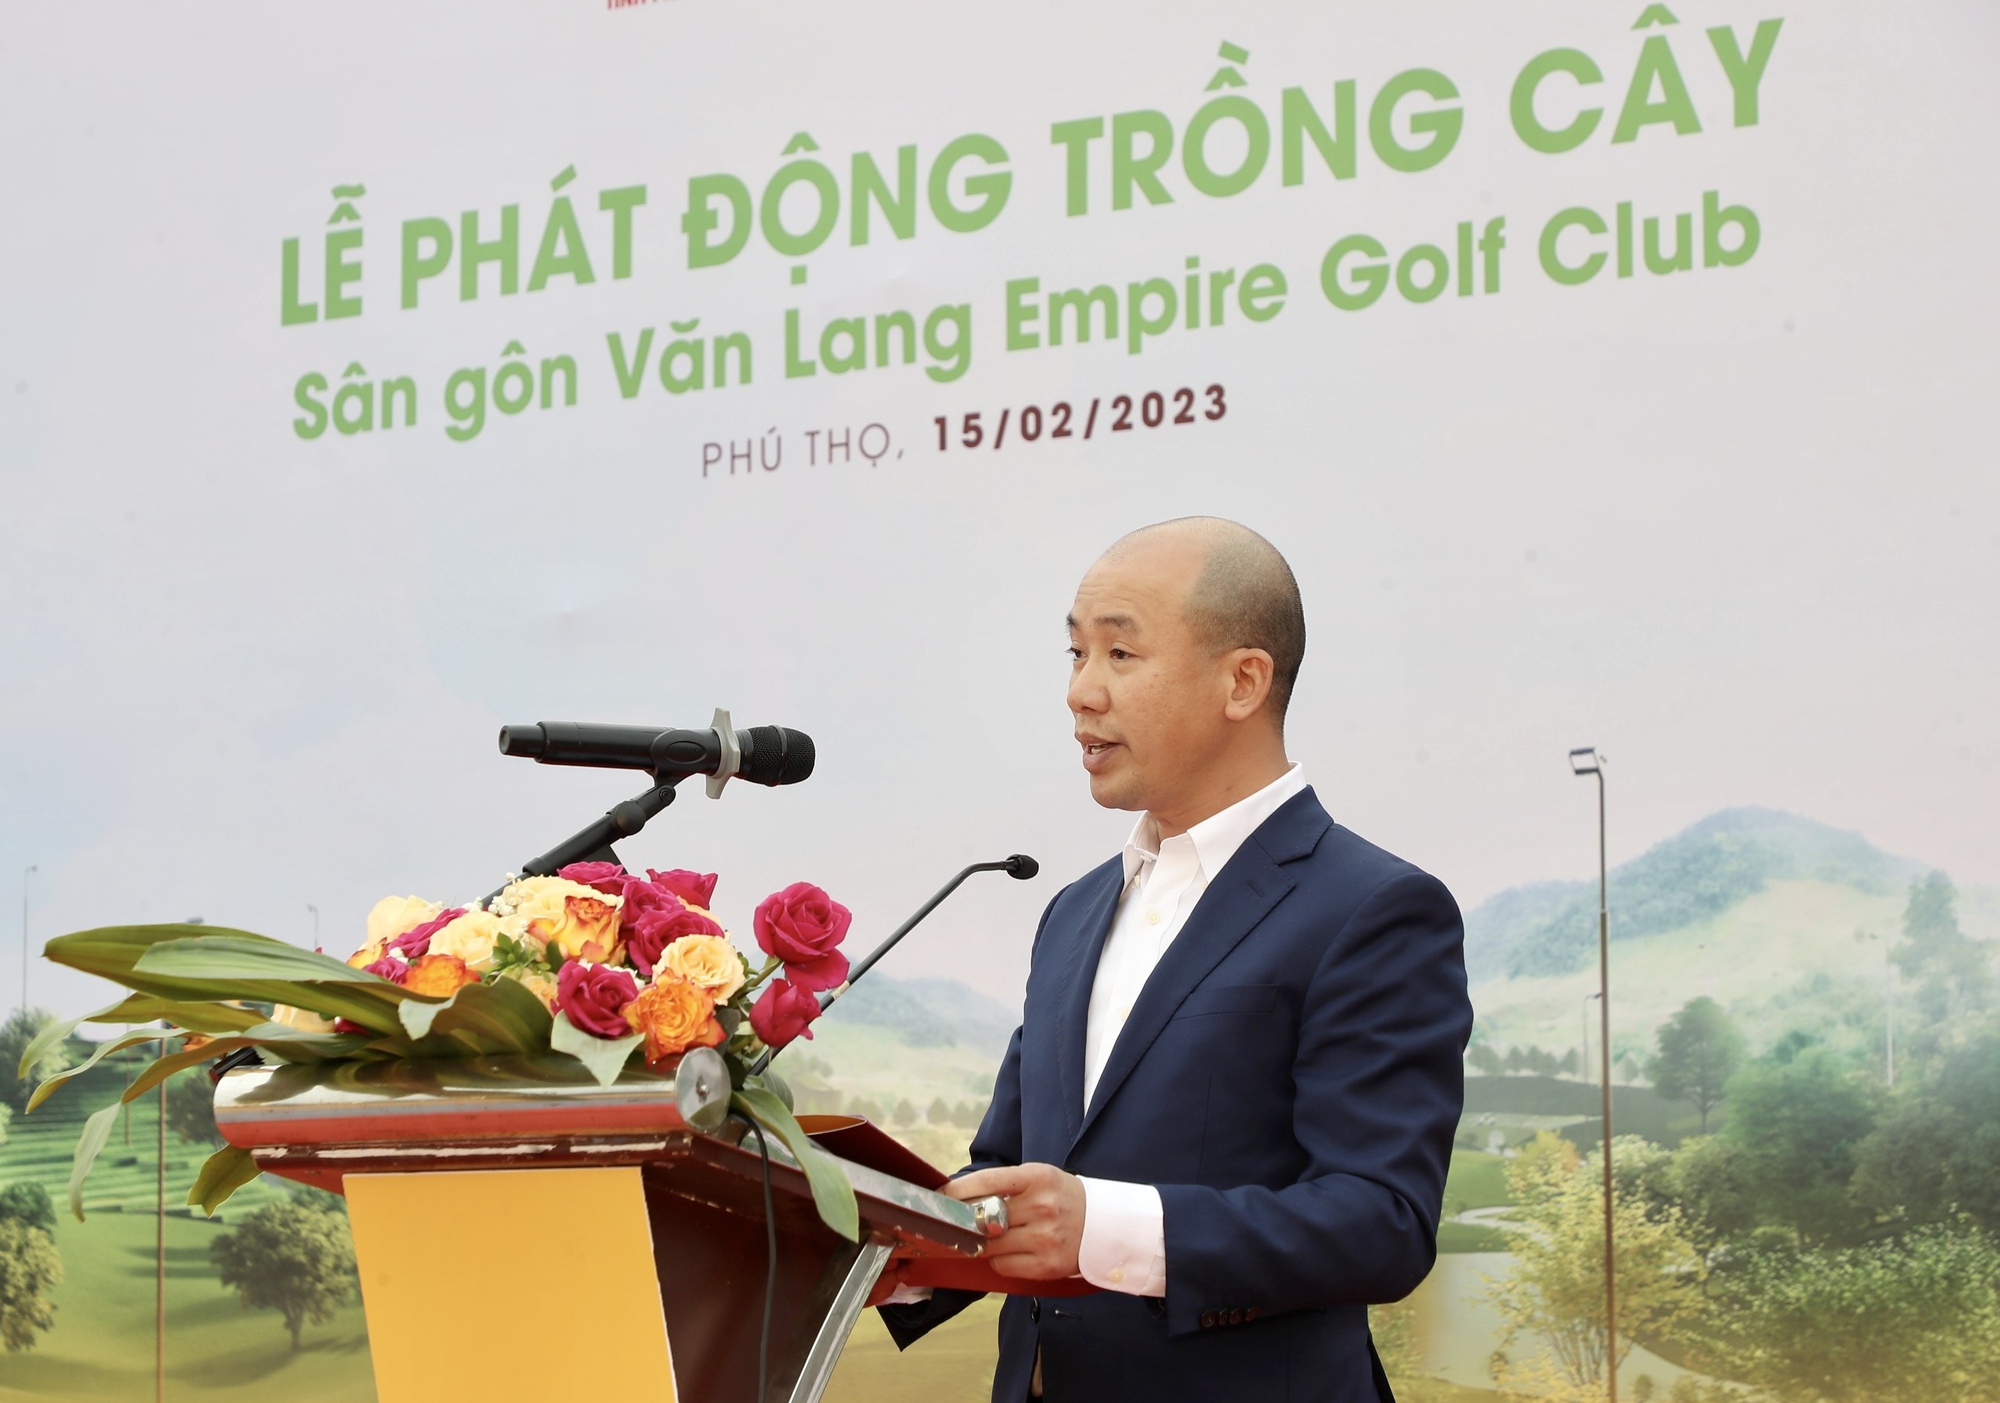 Phát động trồng cây phủ xanh 16 ha dự án sân golf tại tỉnh Phú Thọ - Ảnh 1.